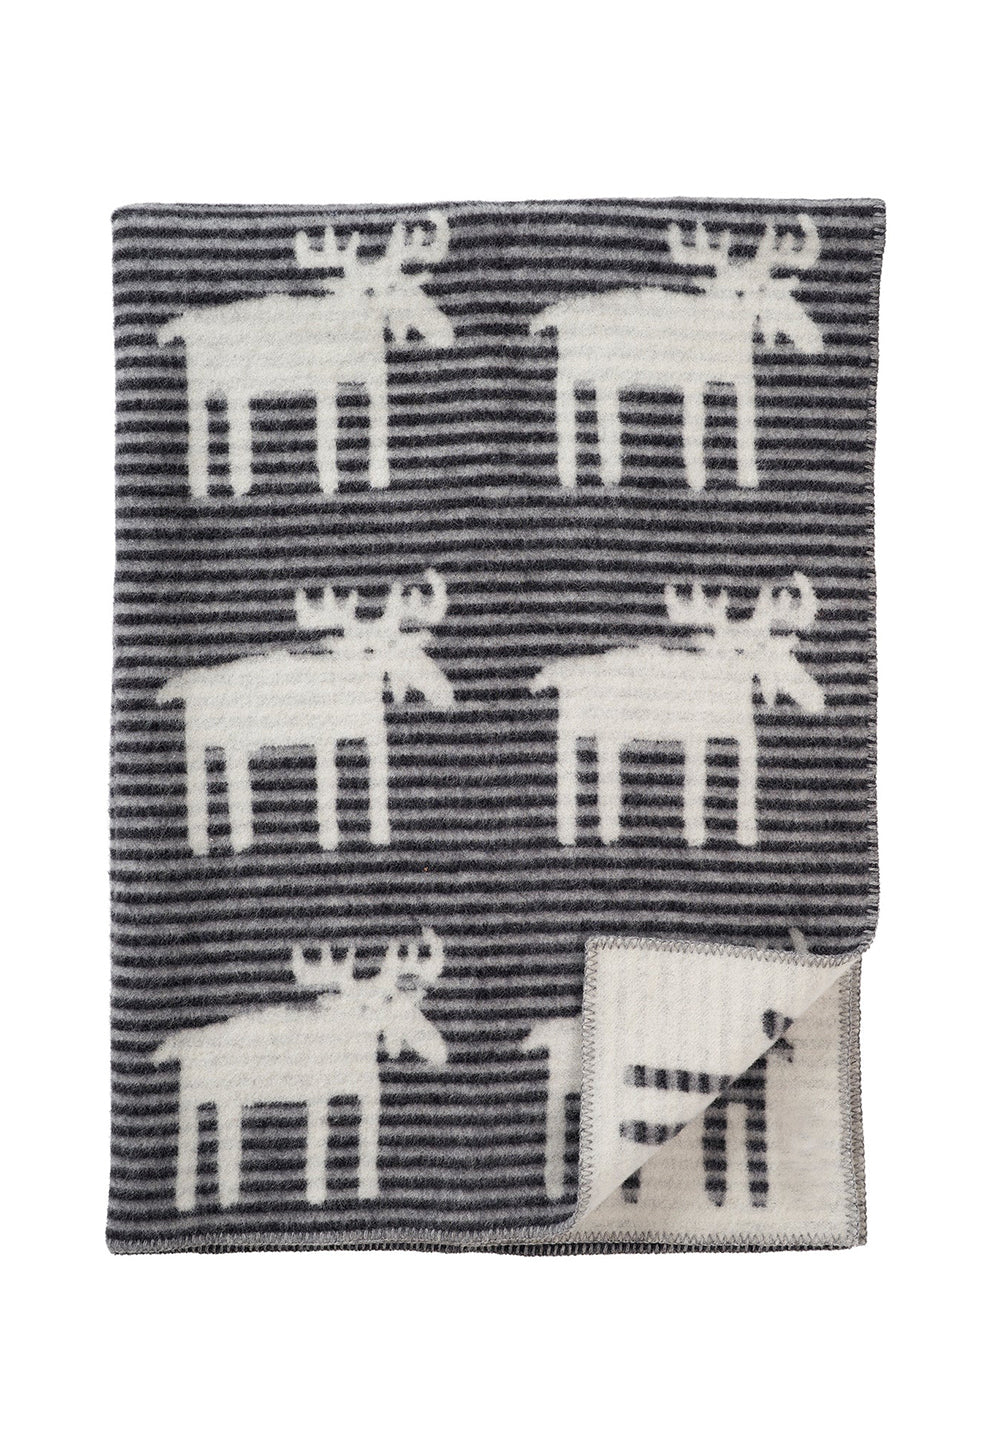 Felted Blanket - Moose Stripes sold by Angel Divine